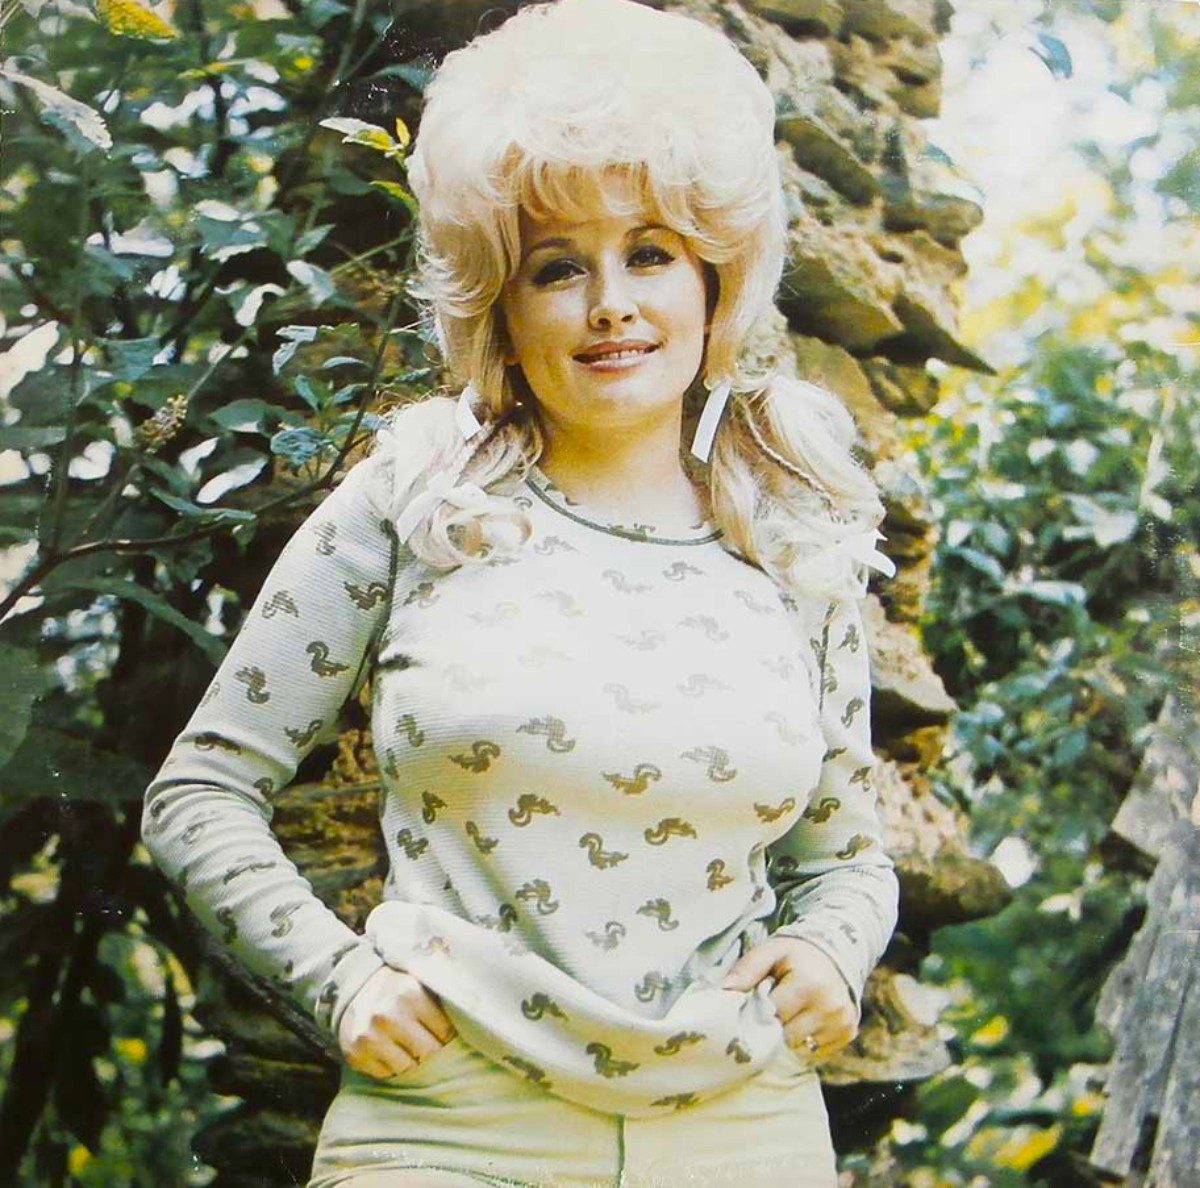 Young Dolly Parton